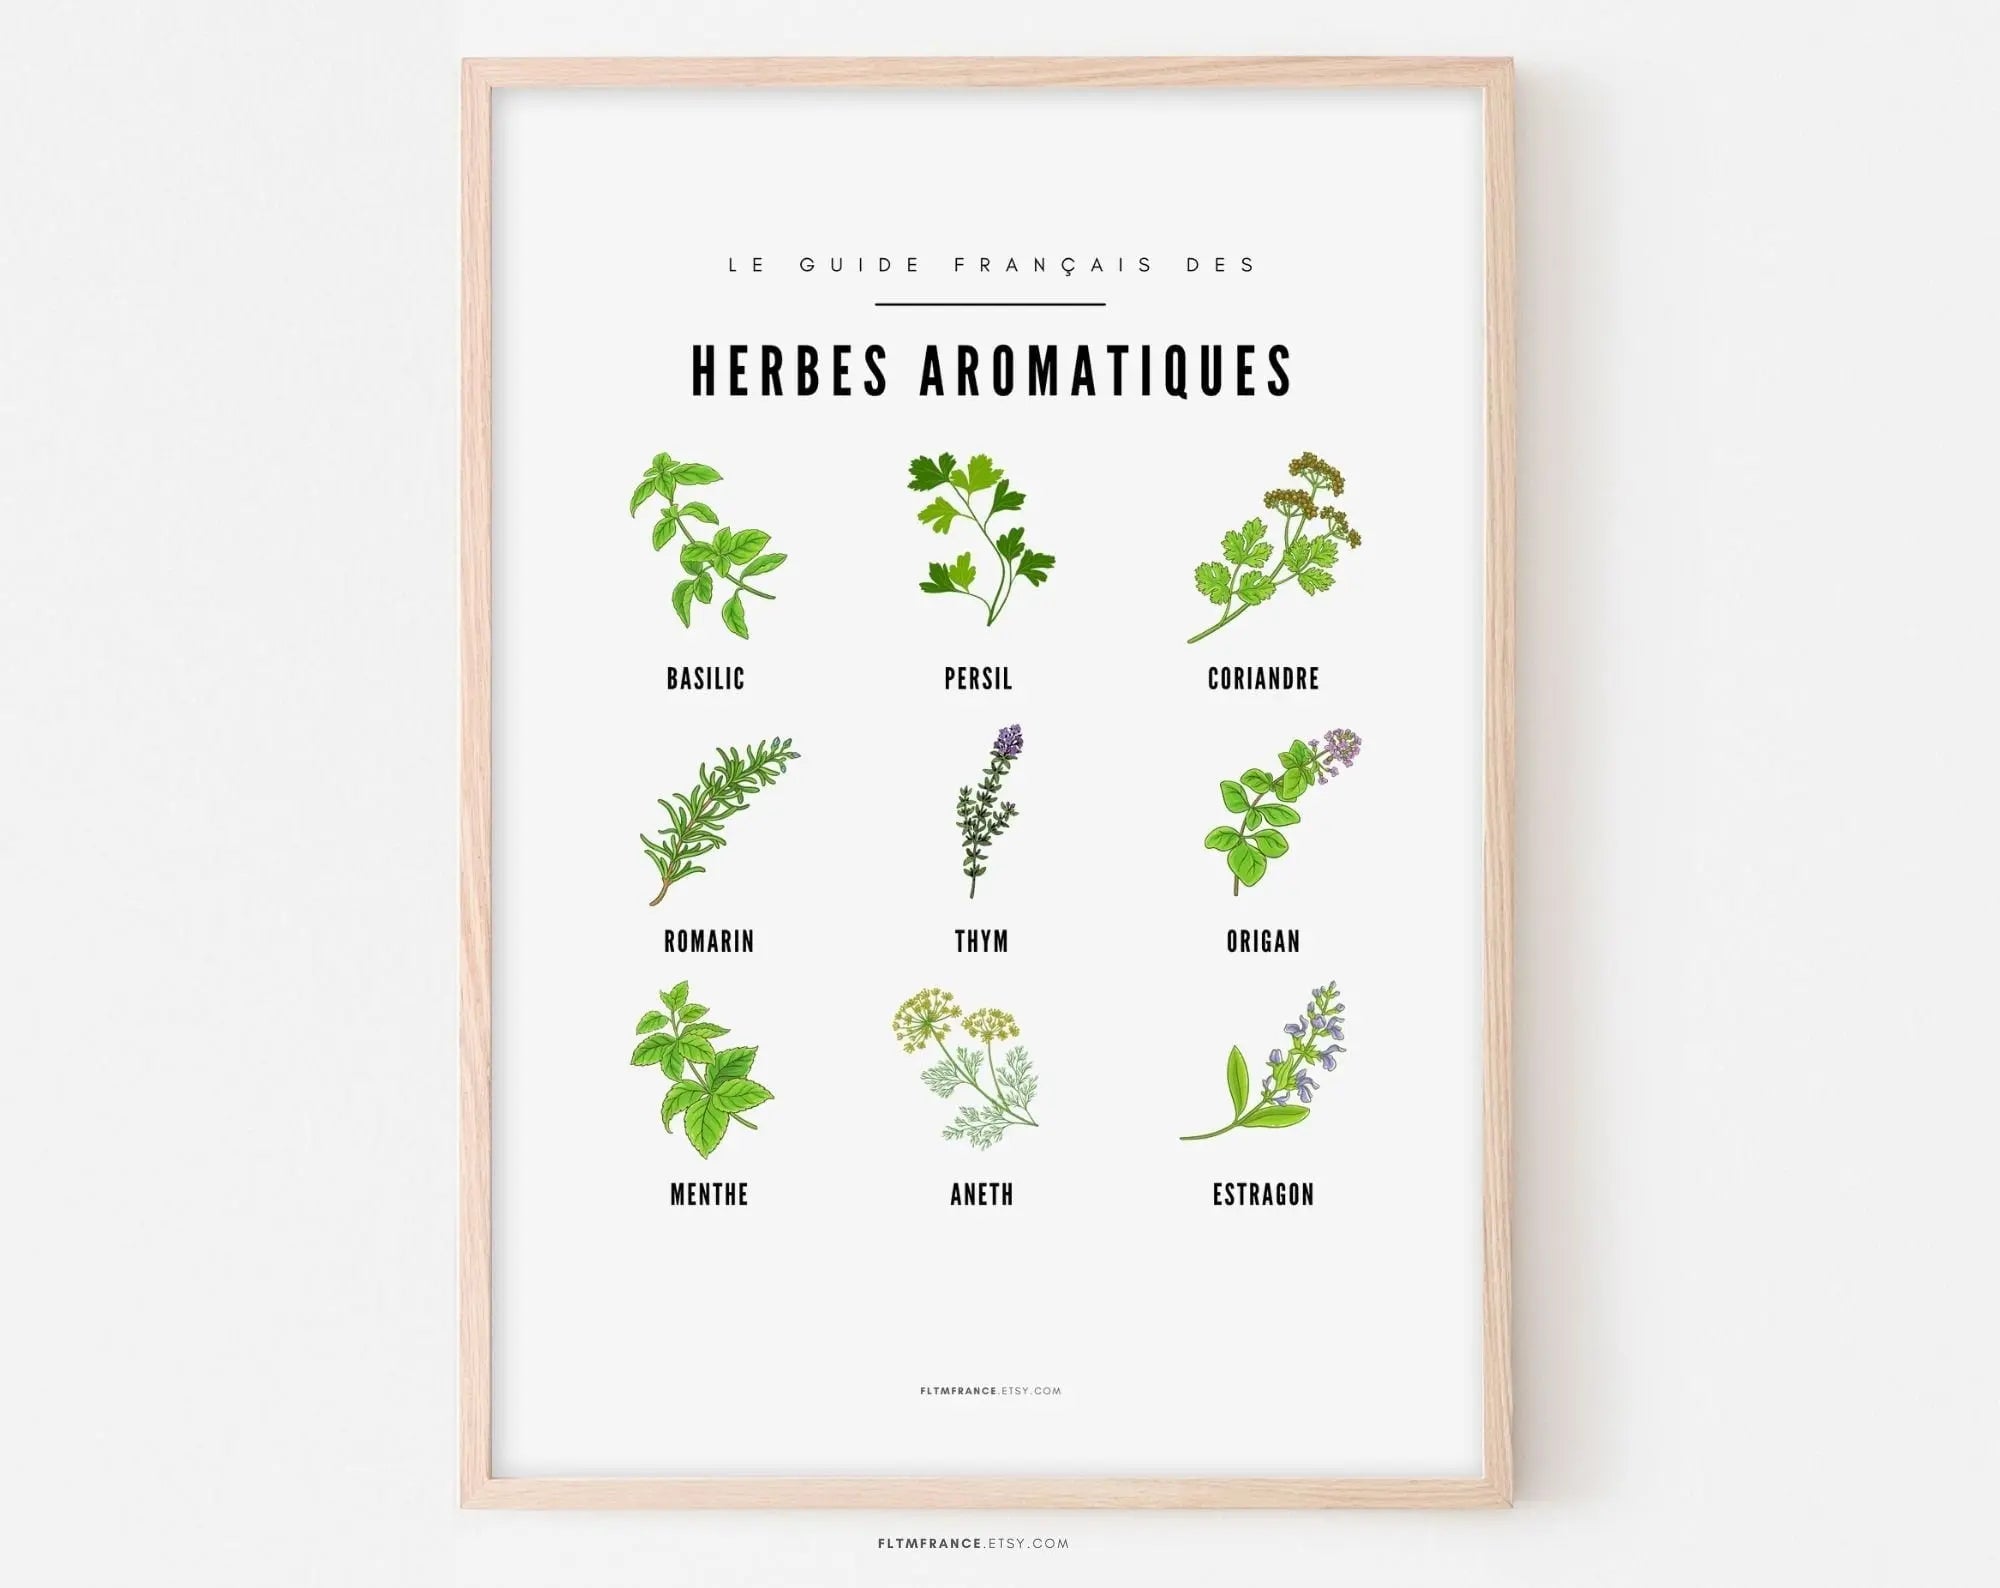 Affiche Herbes aromatiques - Guide des différentes herbes aromatiques et plantes sauvage - Poster à imprimer - Décoration murale